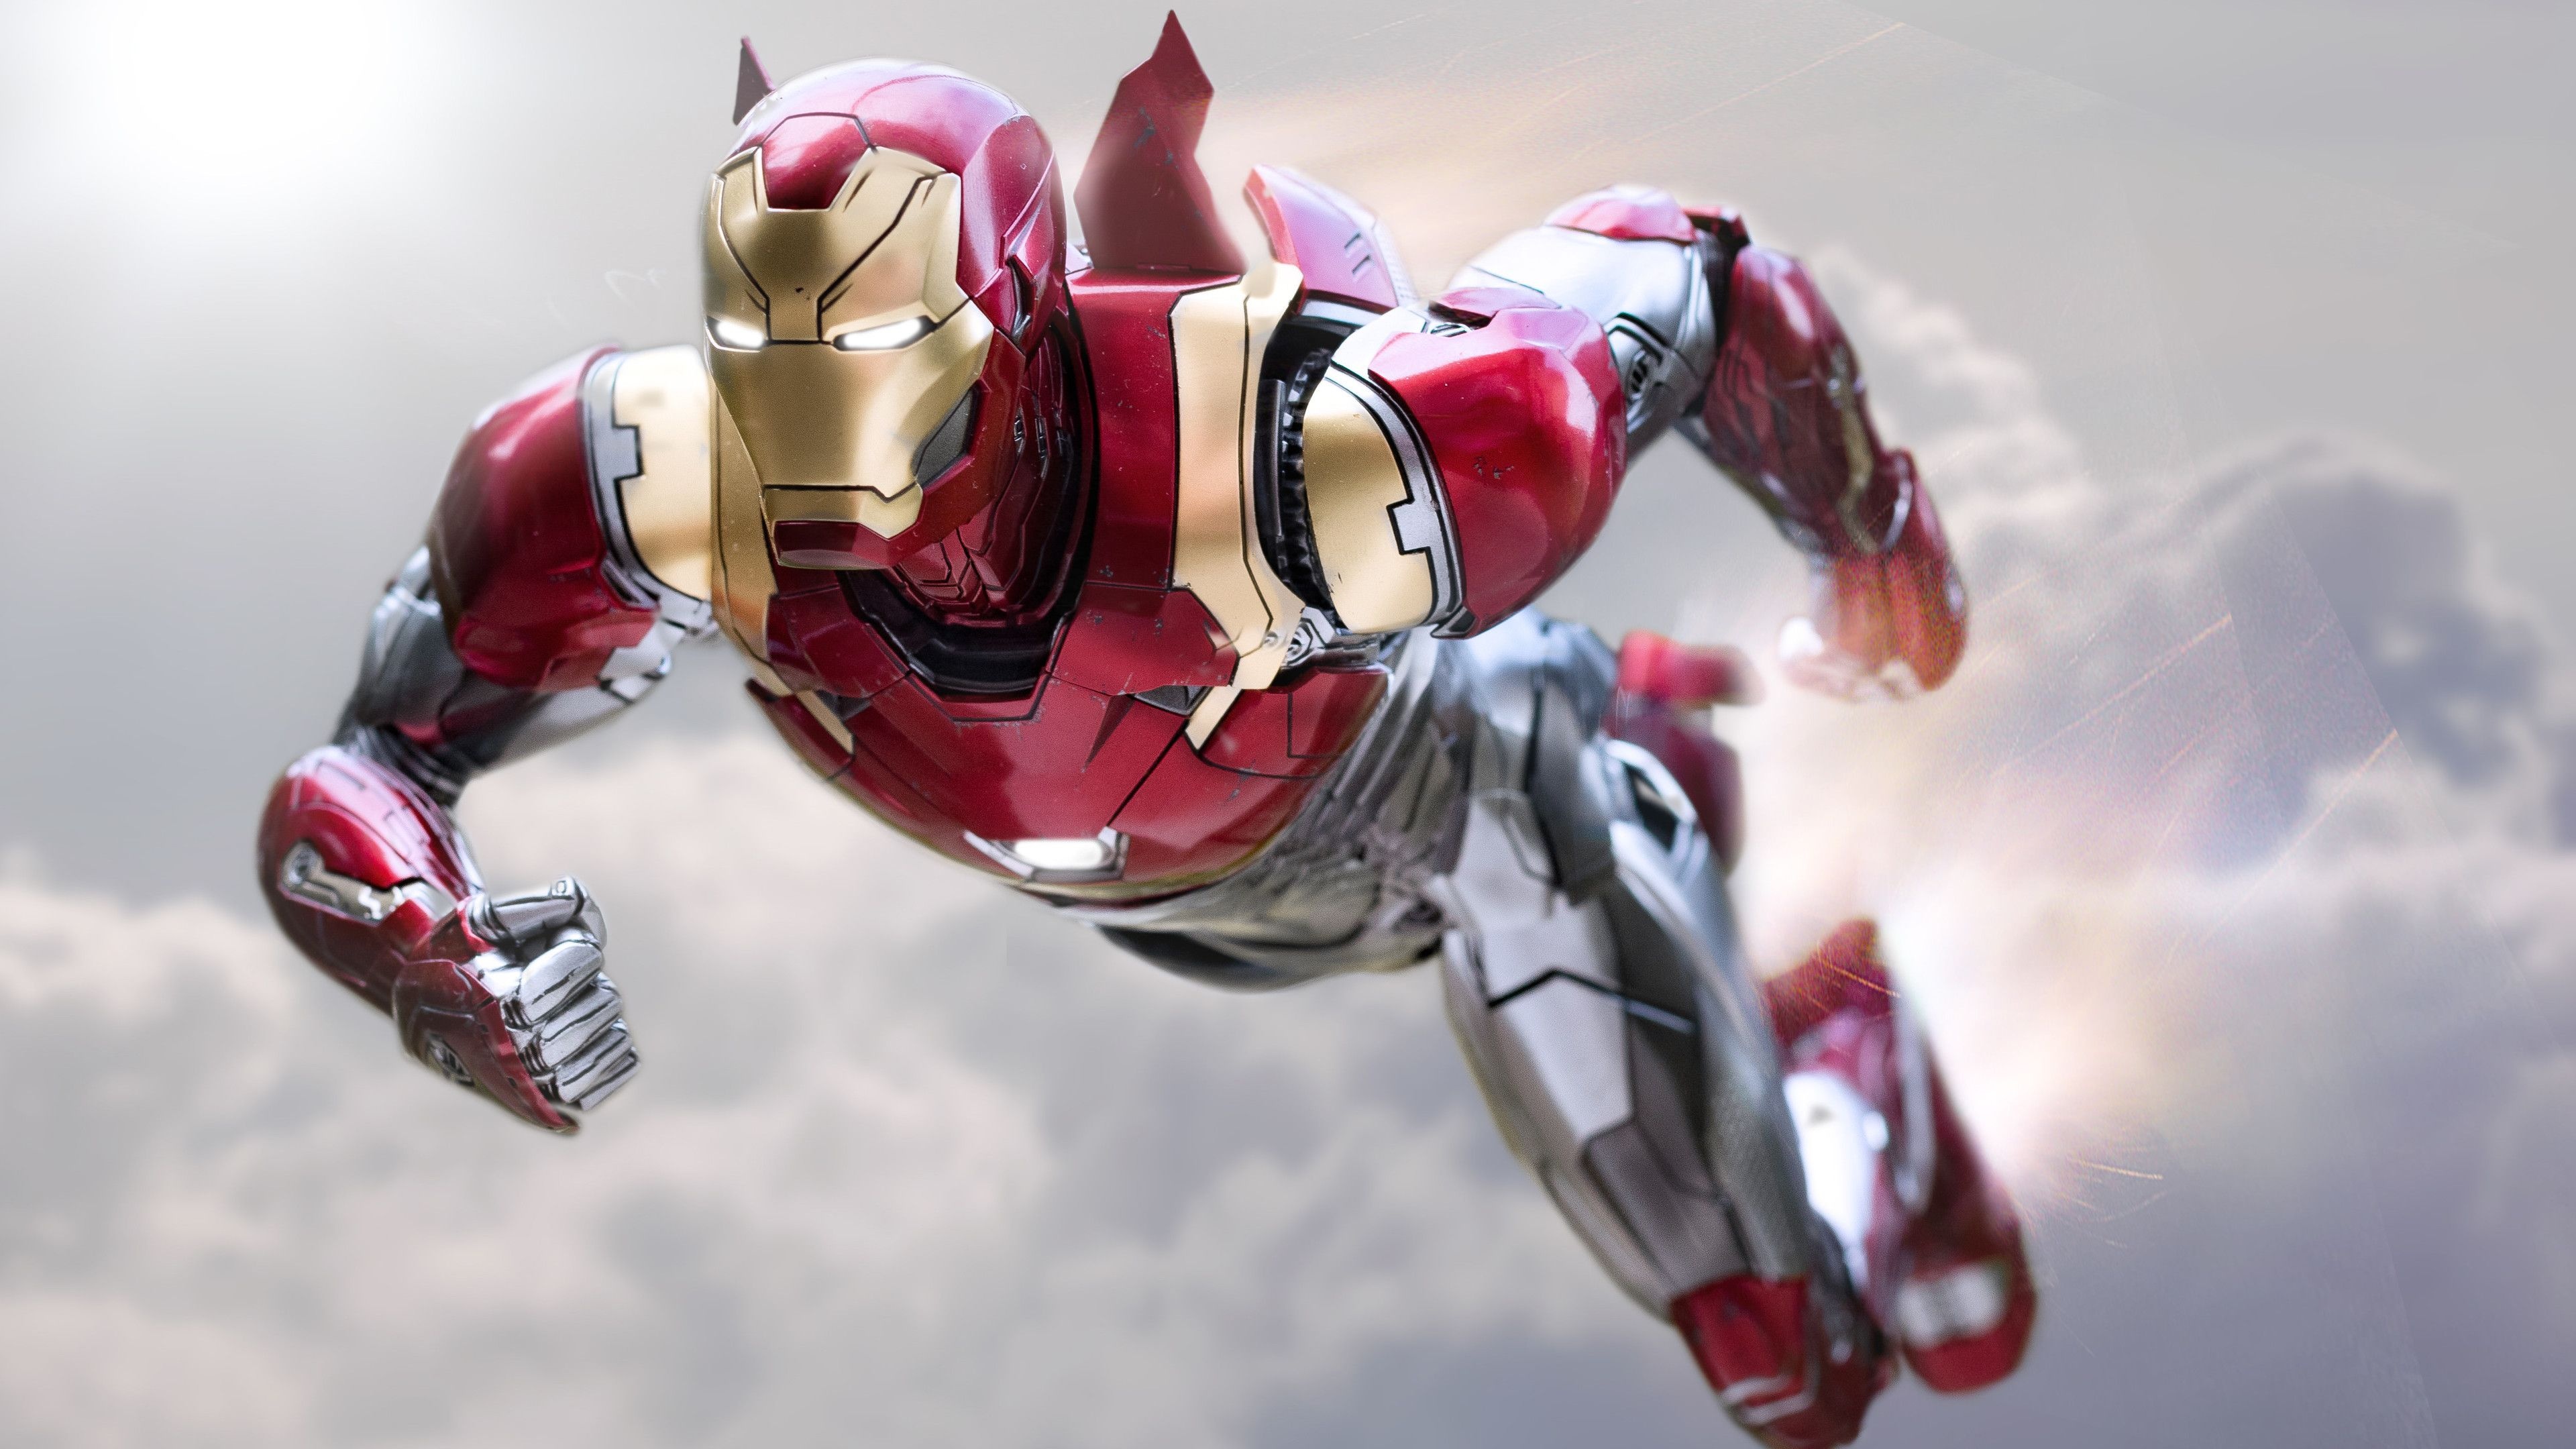 Iron Man, Ultra HD wallpapers, High-tech suit, Stunning visuals, 3840x2160 4K Desktop